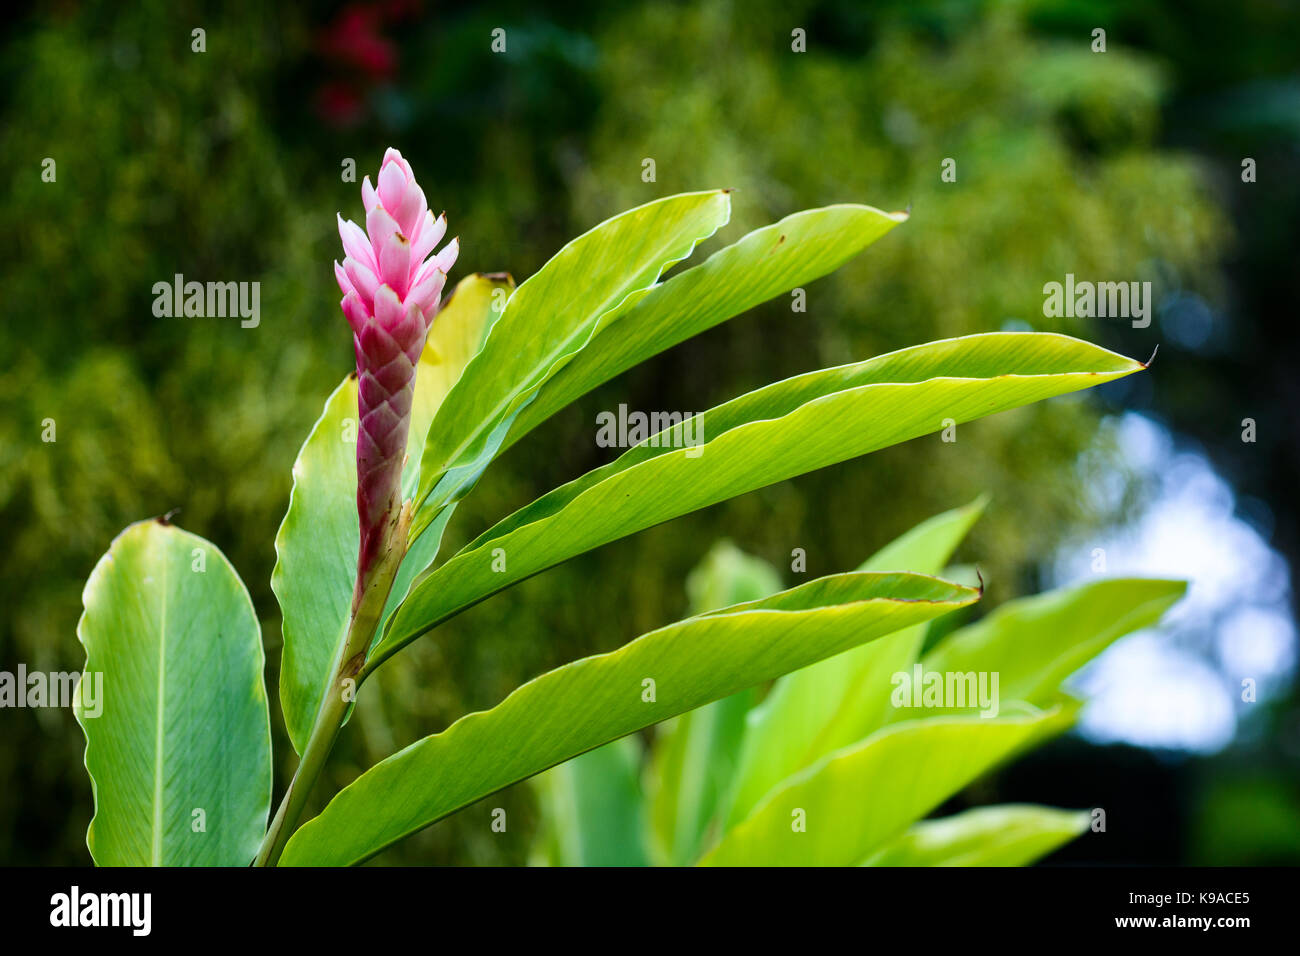 Pink ginger flower in botanical garden Stock Photo